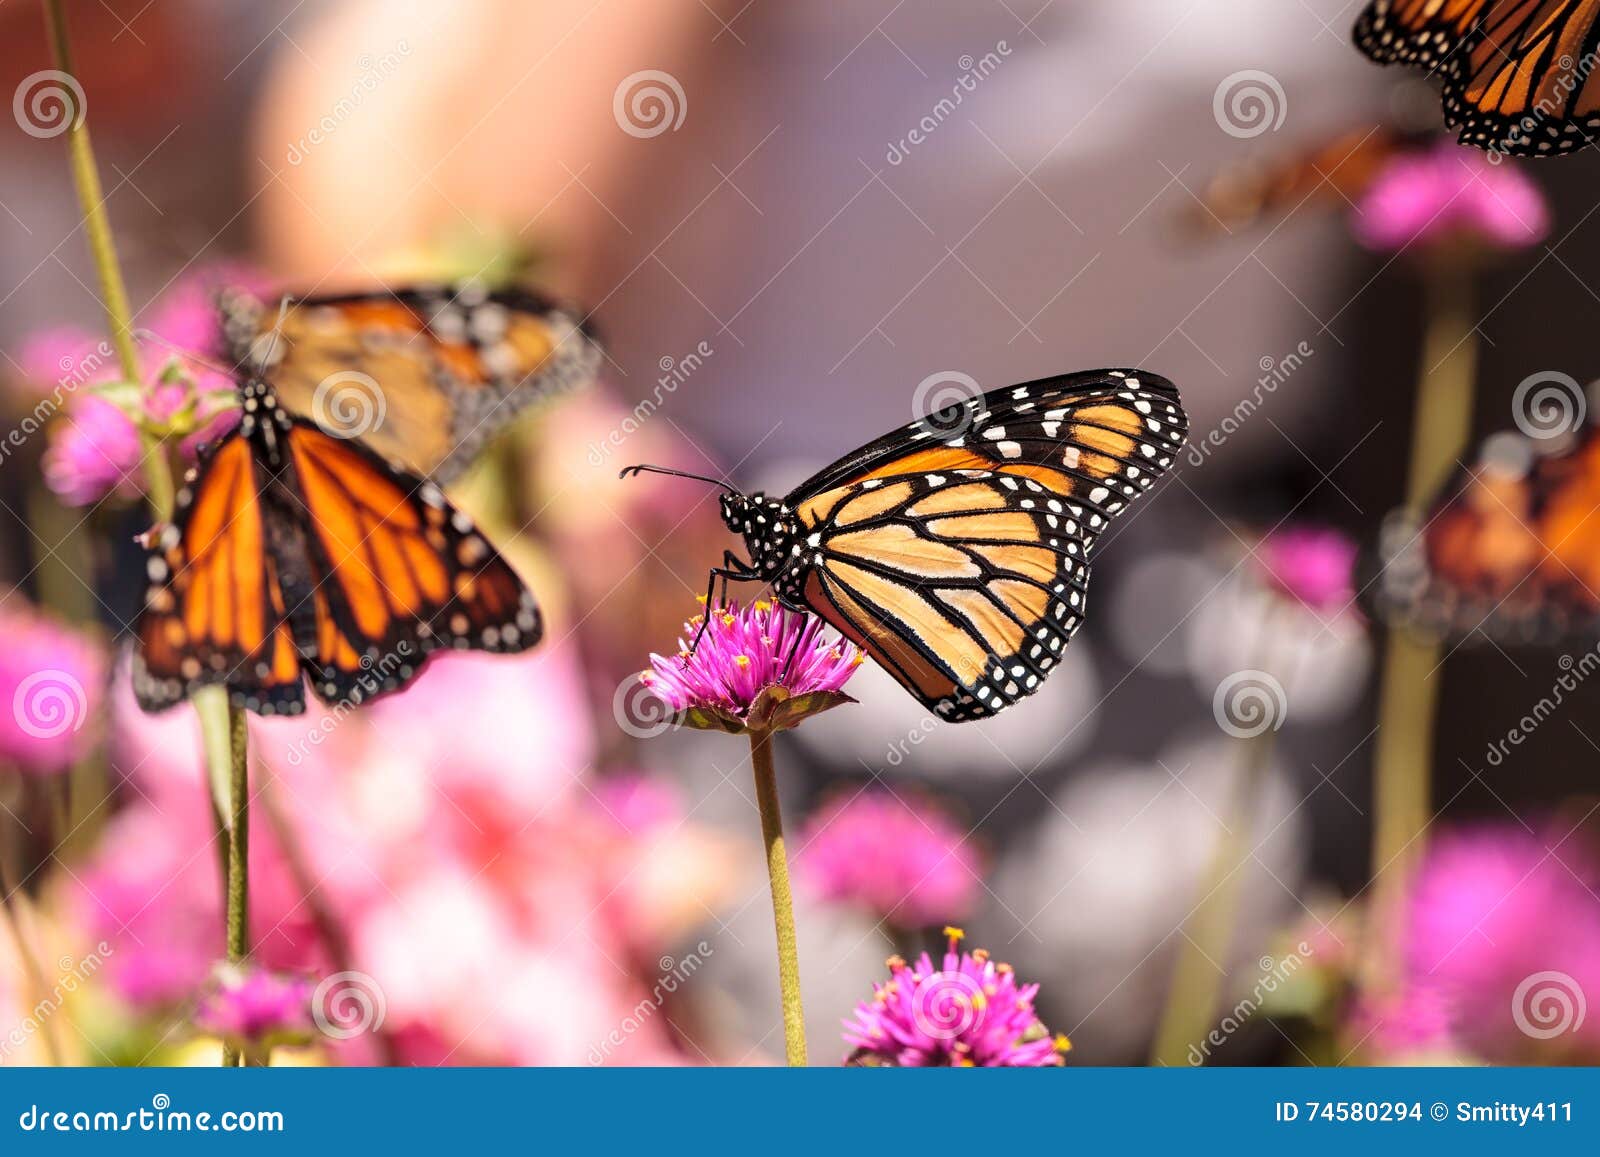 monarch butterfly, danaus plexippus